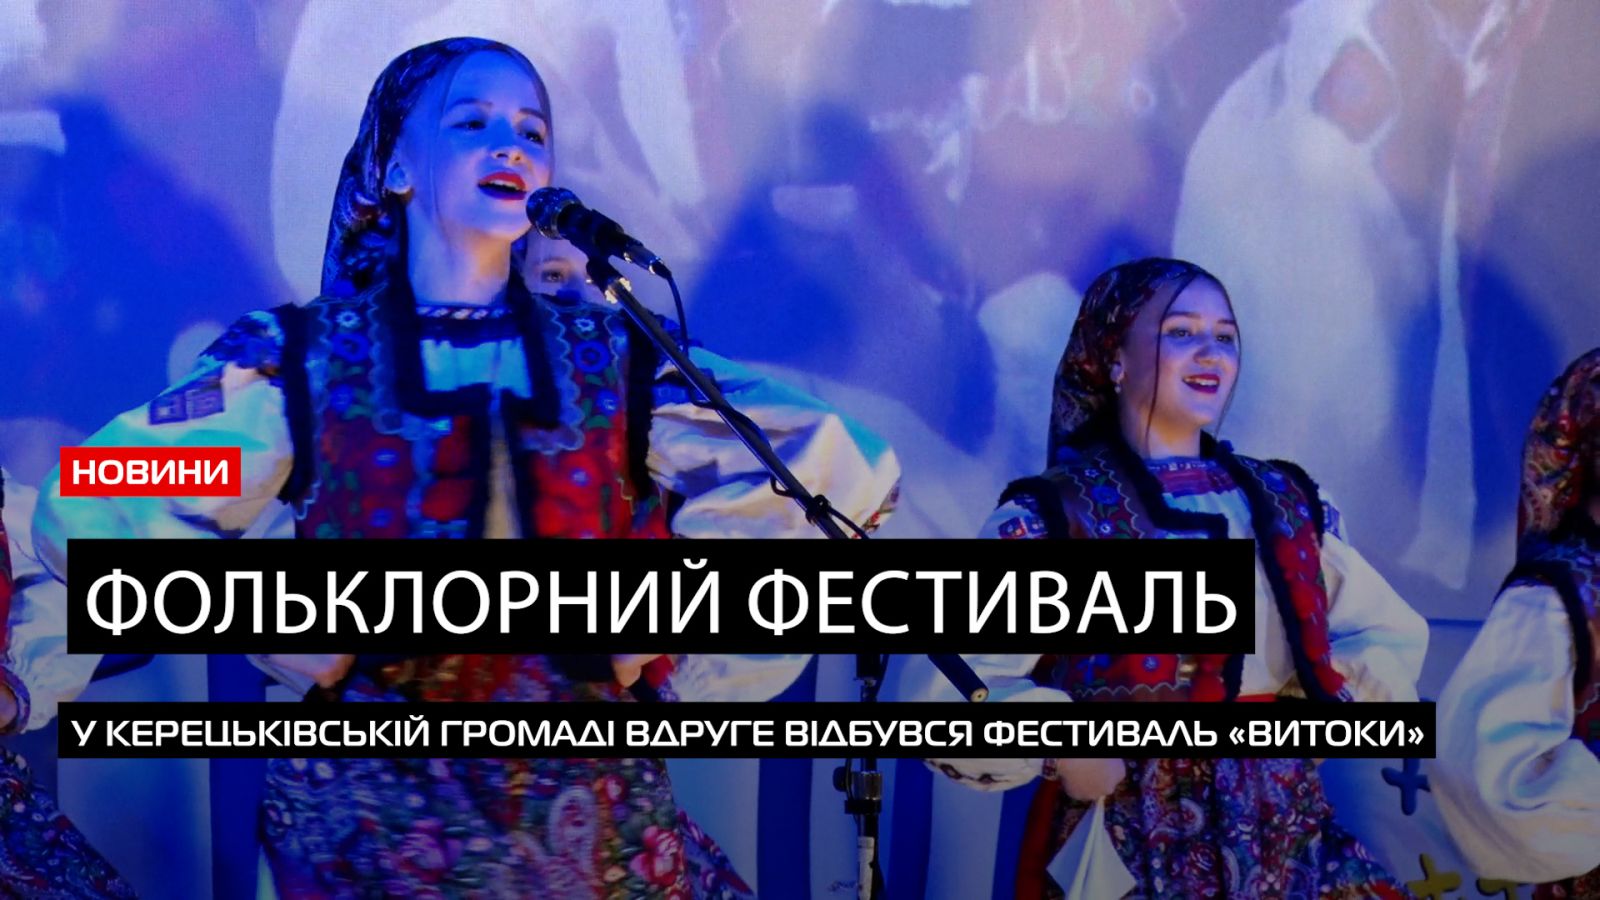  Більше 100 учасників: у Керецьківській ТГ відбувся фестиваль фольклору «Витоки» (ВІДЕО) 0